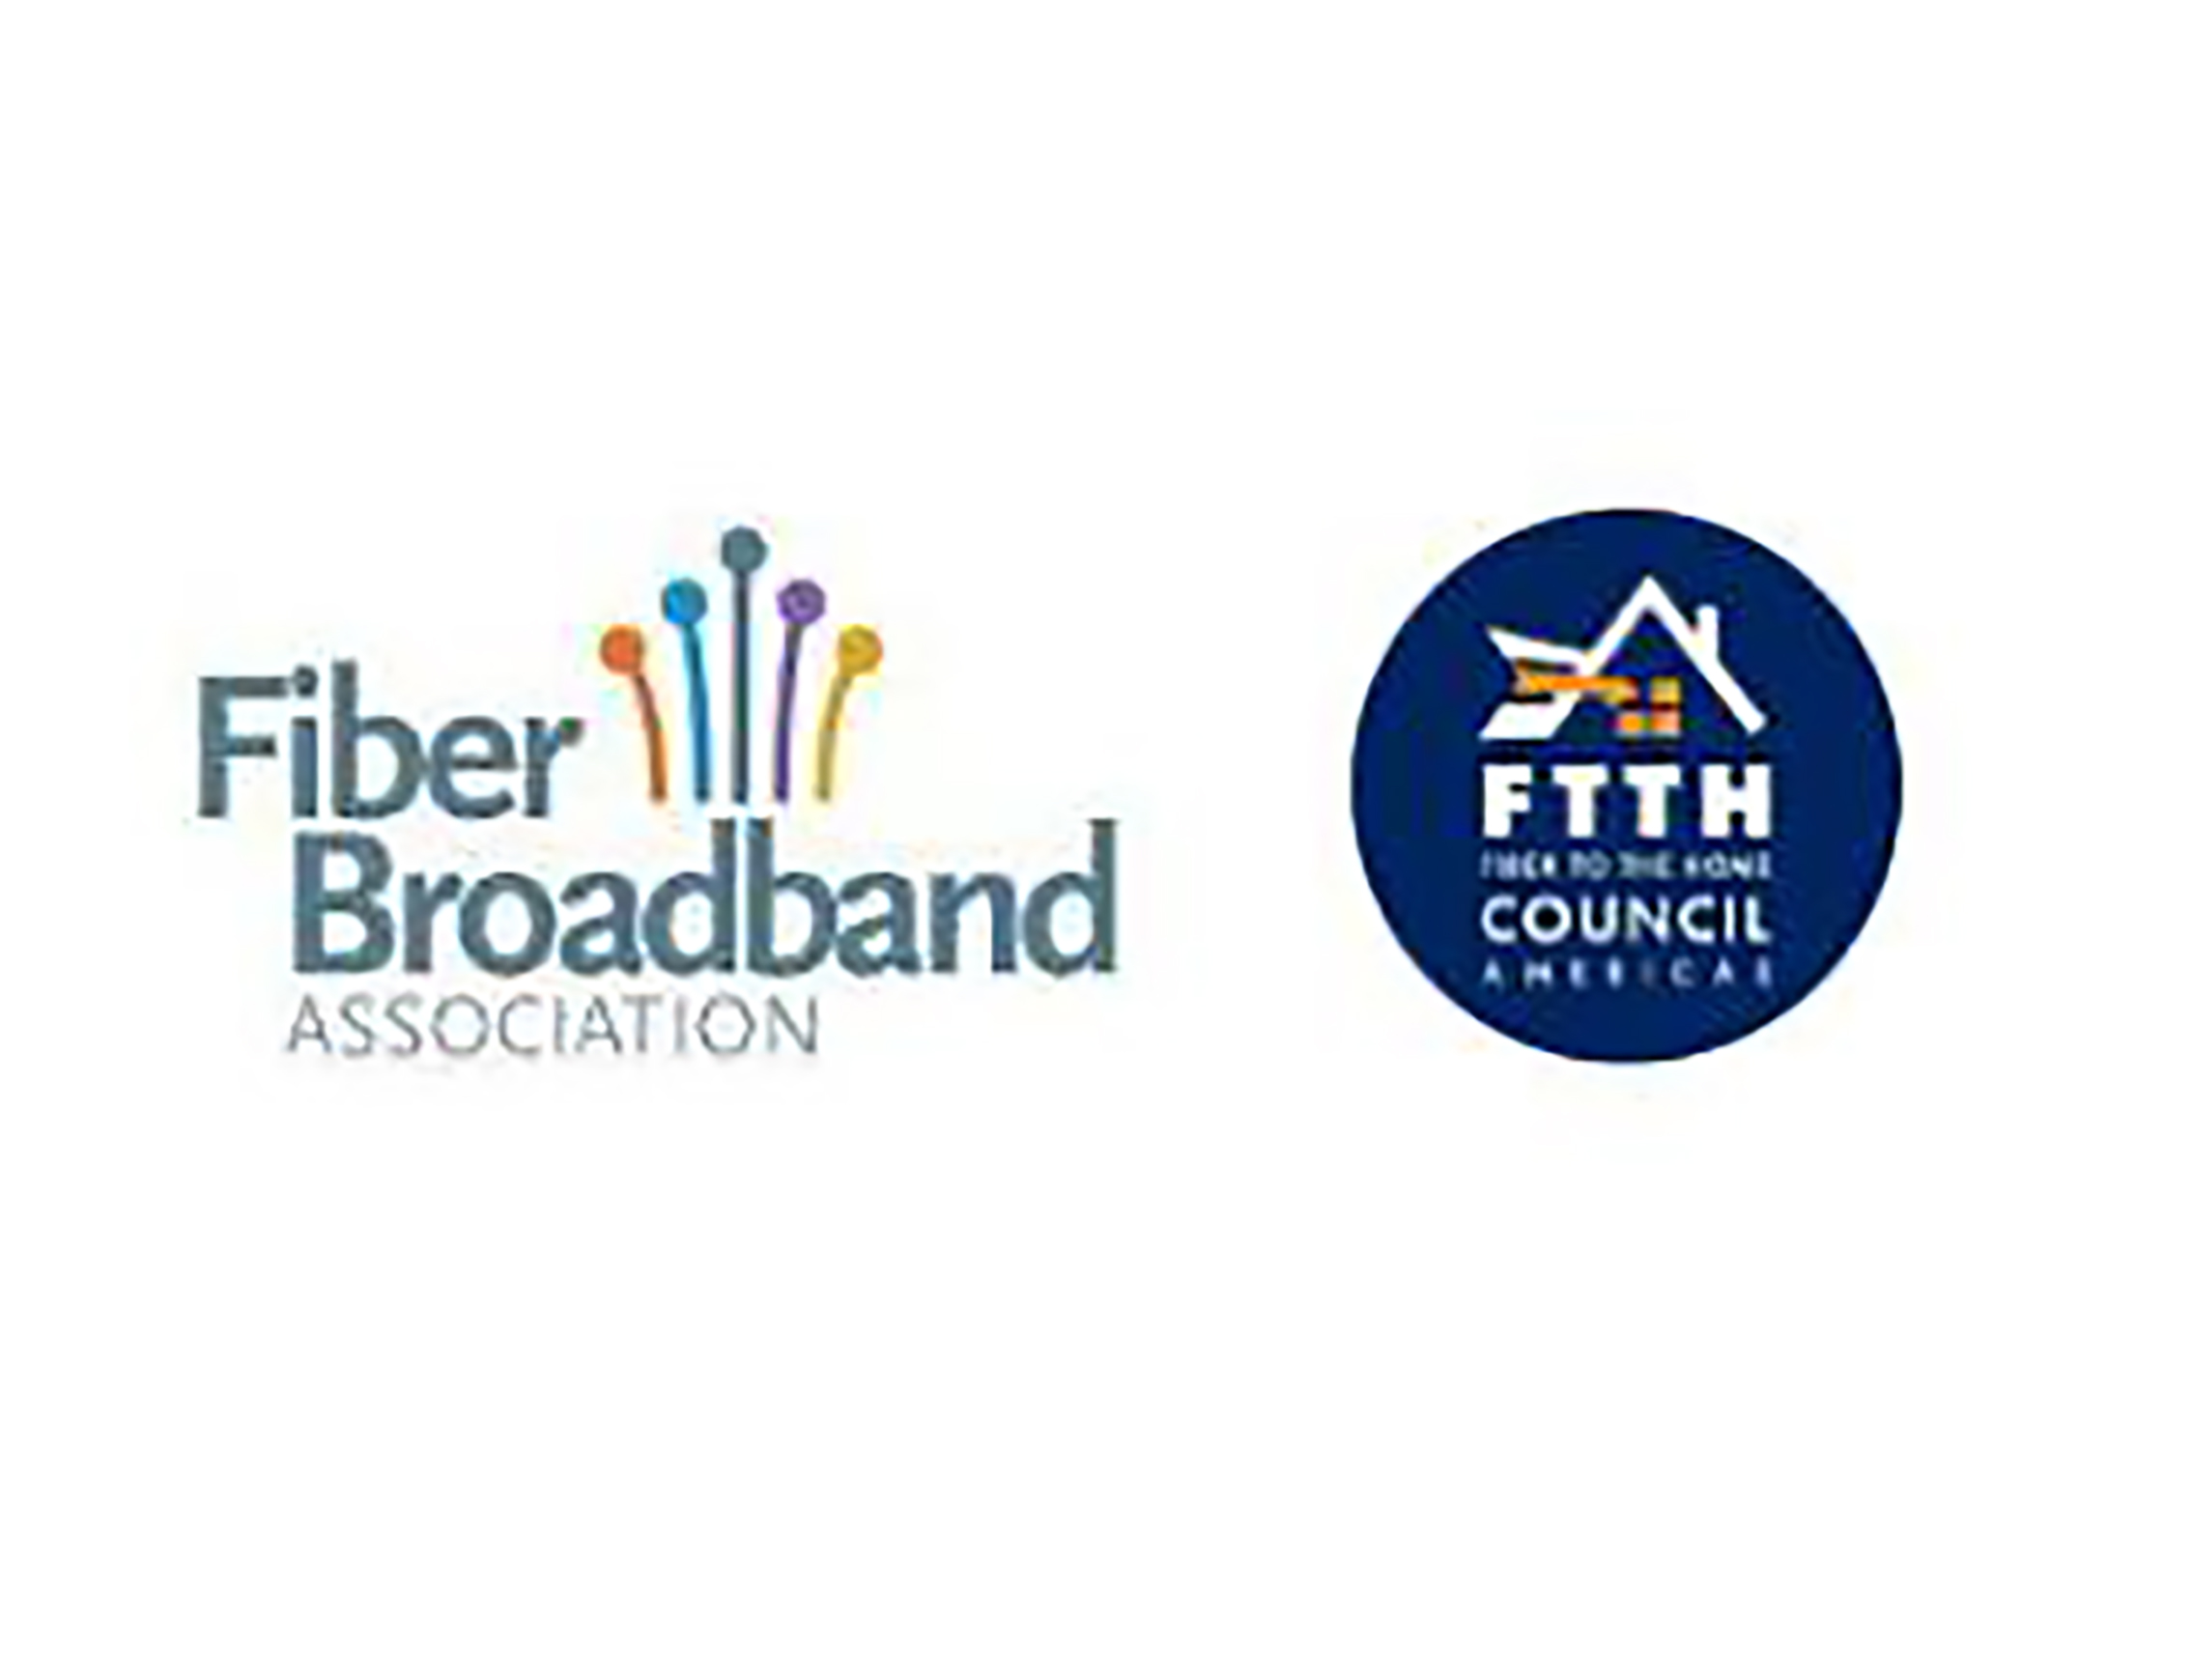 Fiber Broadband Association